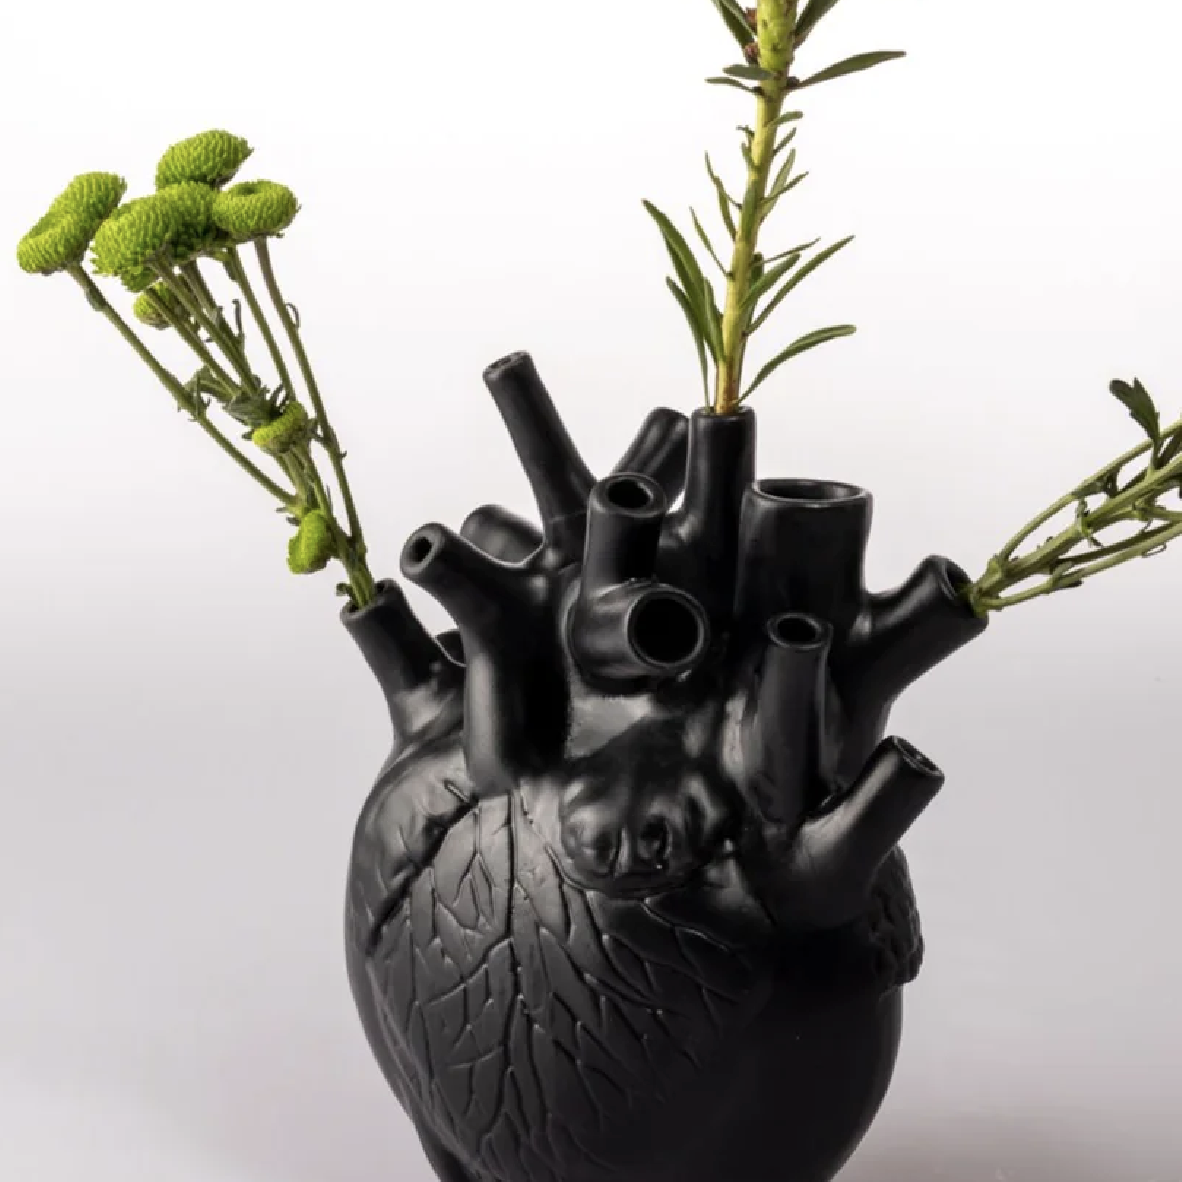 Pumping Heart Vase Medium - Black